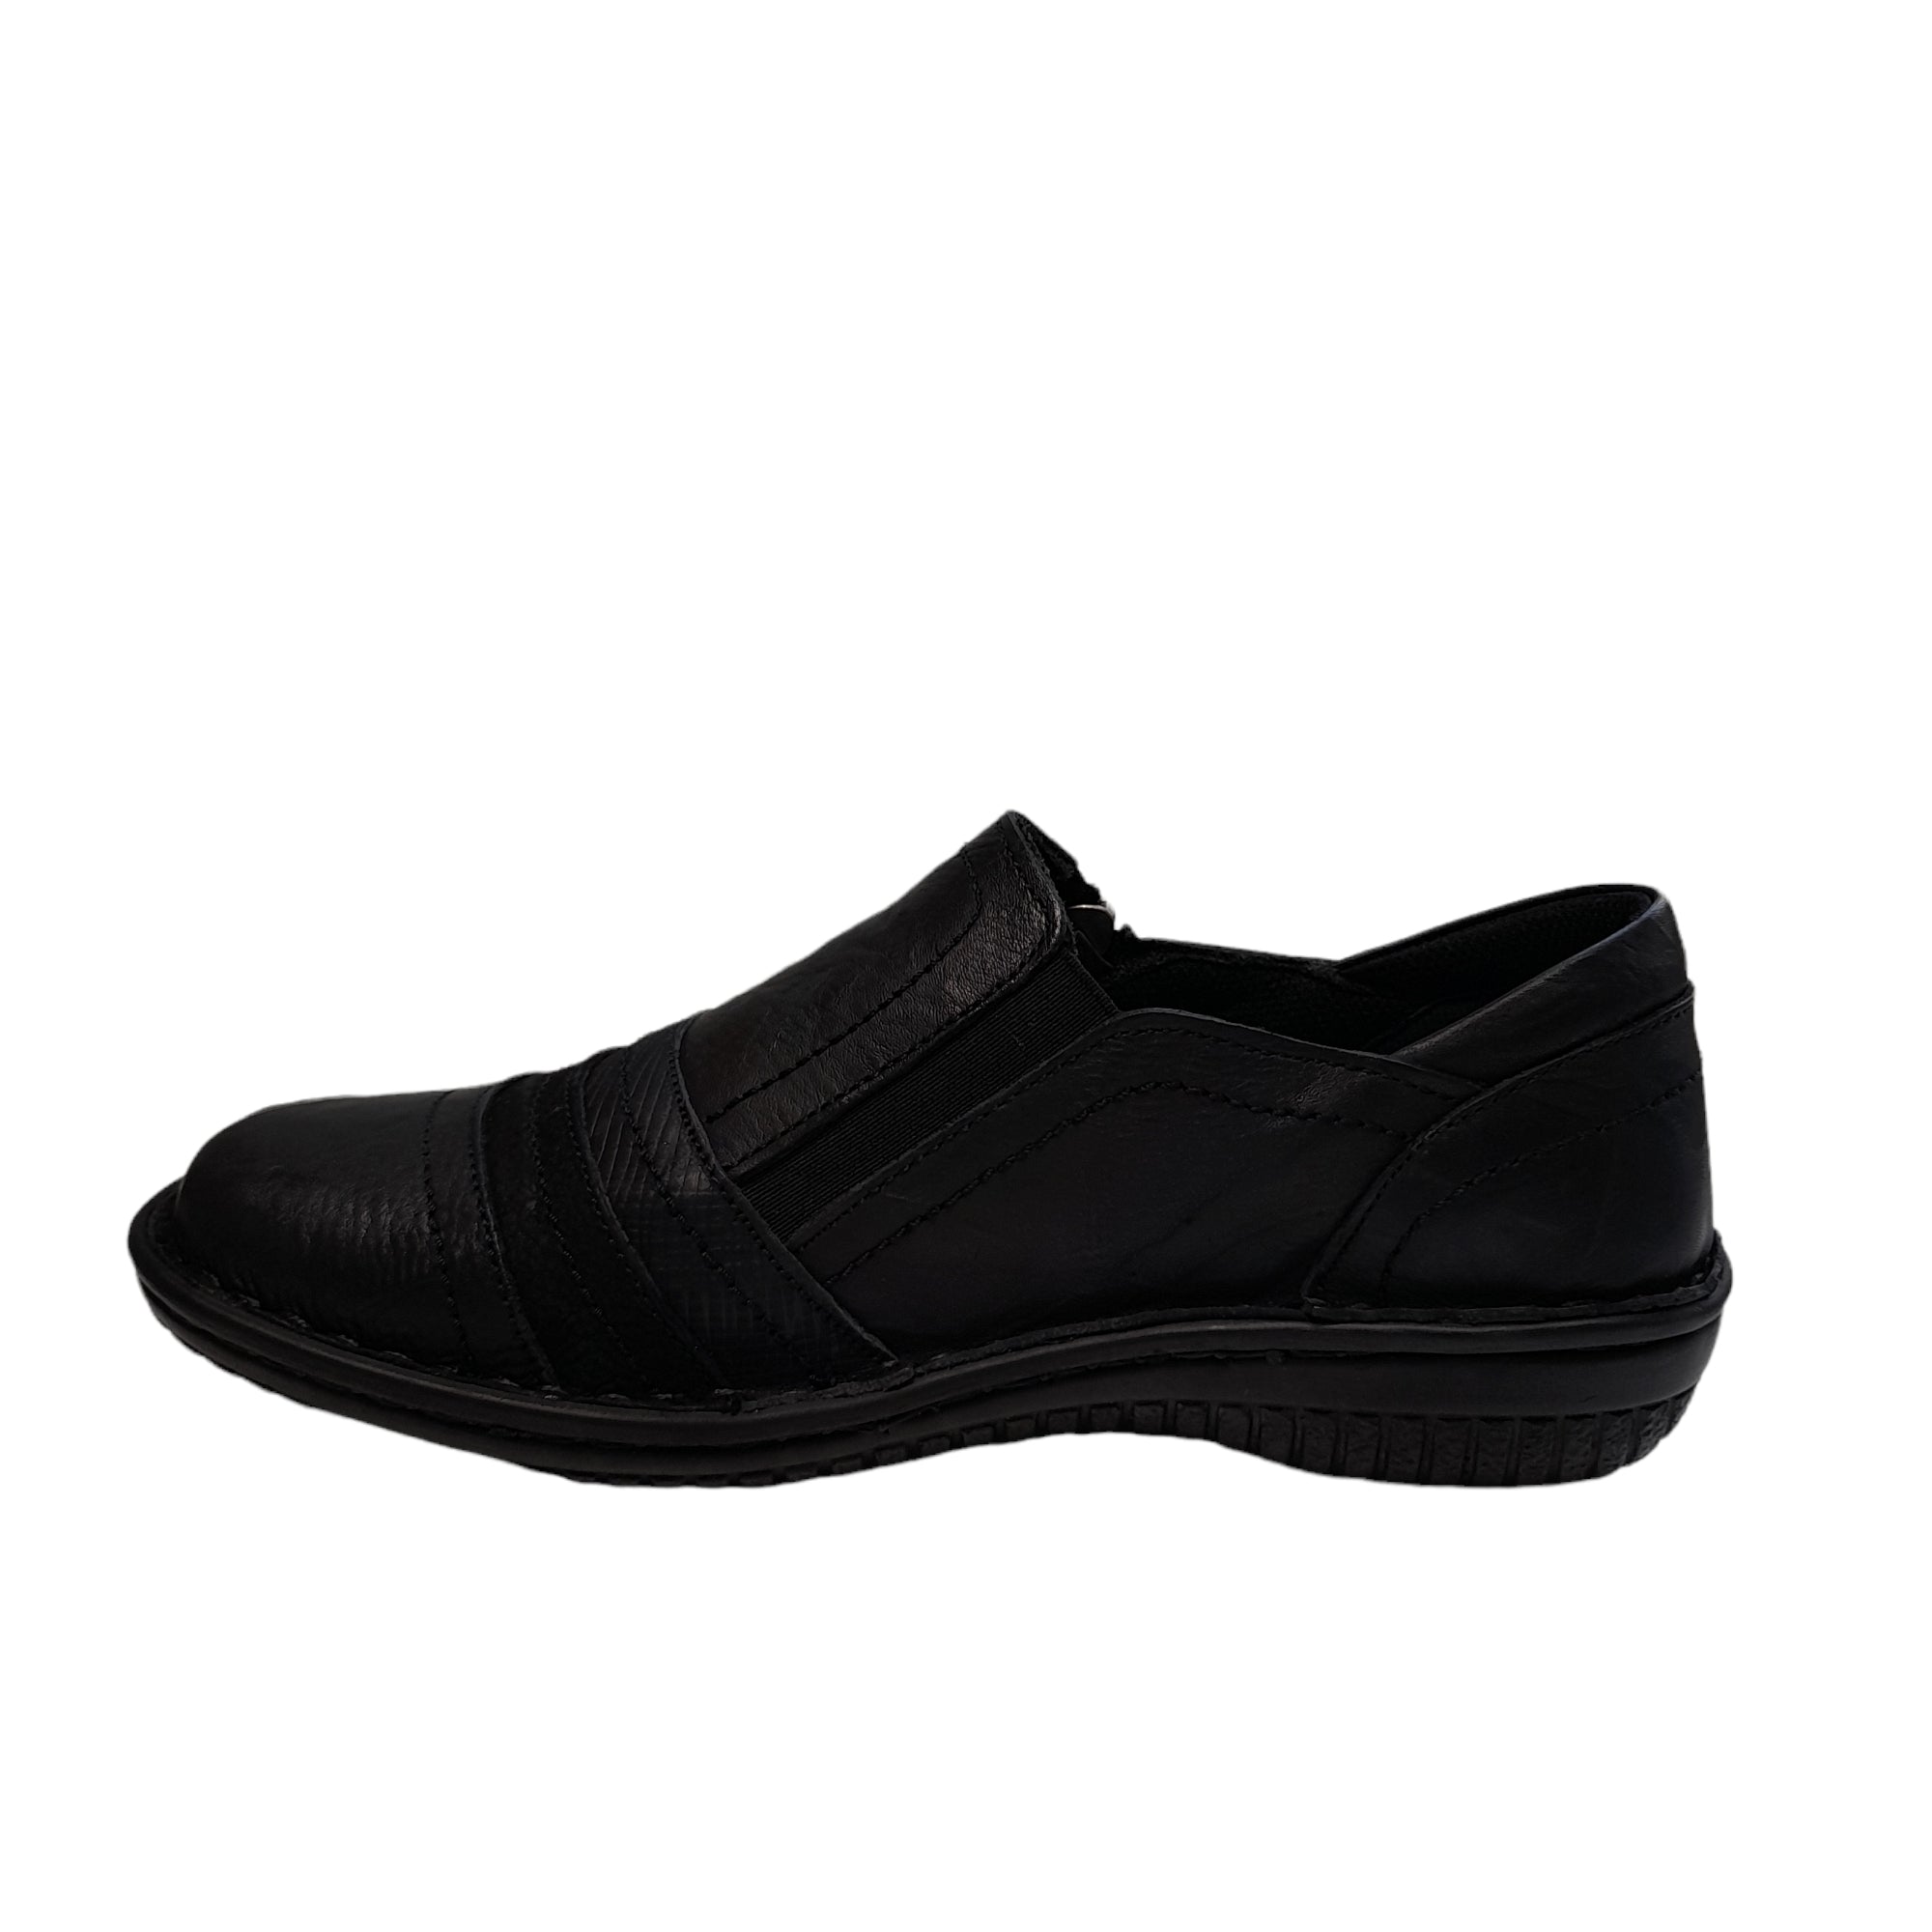 5849-27 - shoe&amp;me - Cabello - Shoe - Shoes, Womens